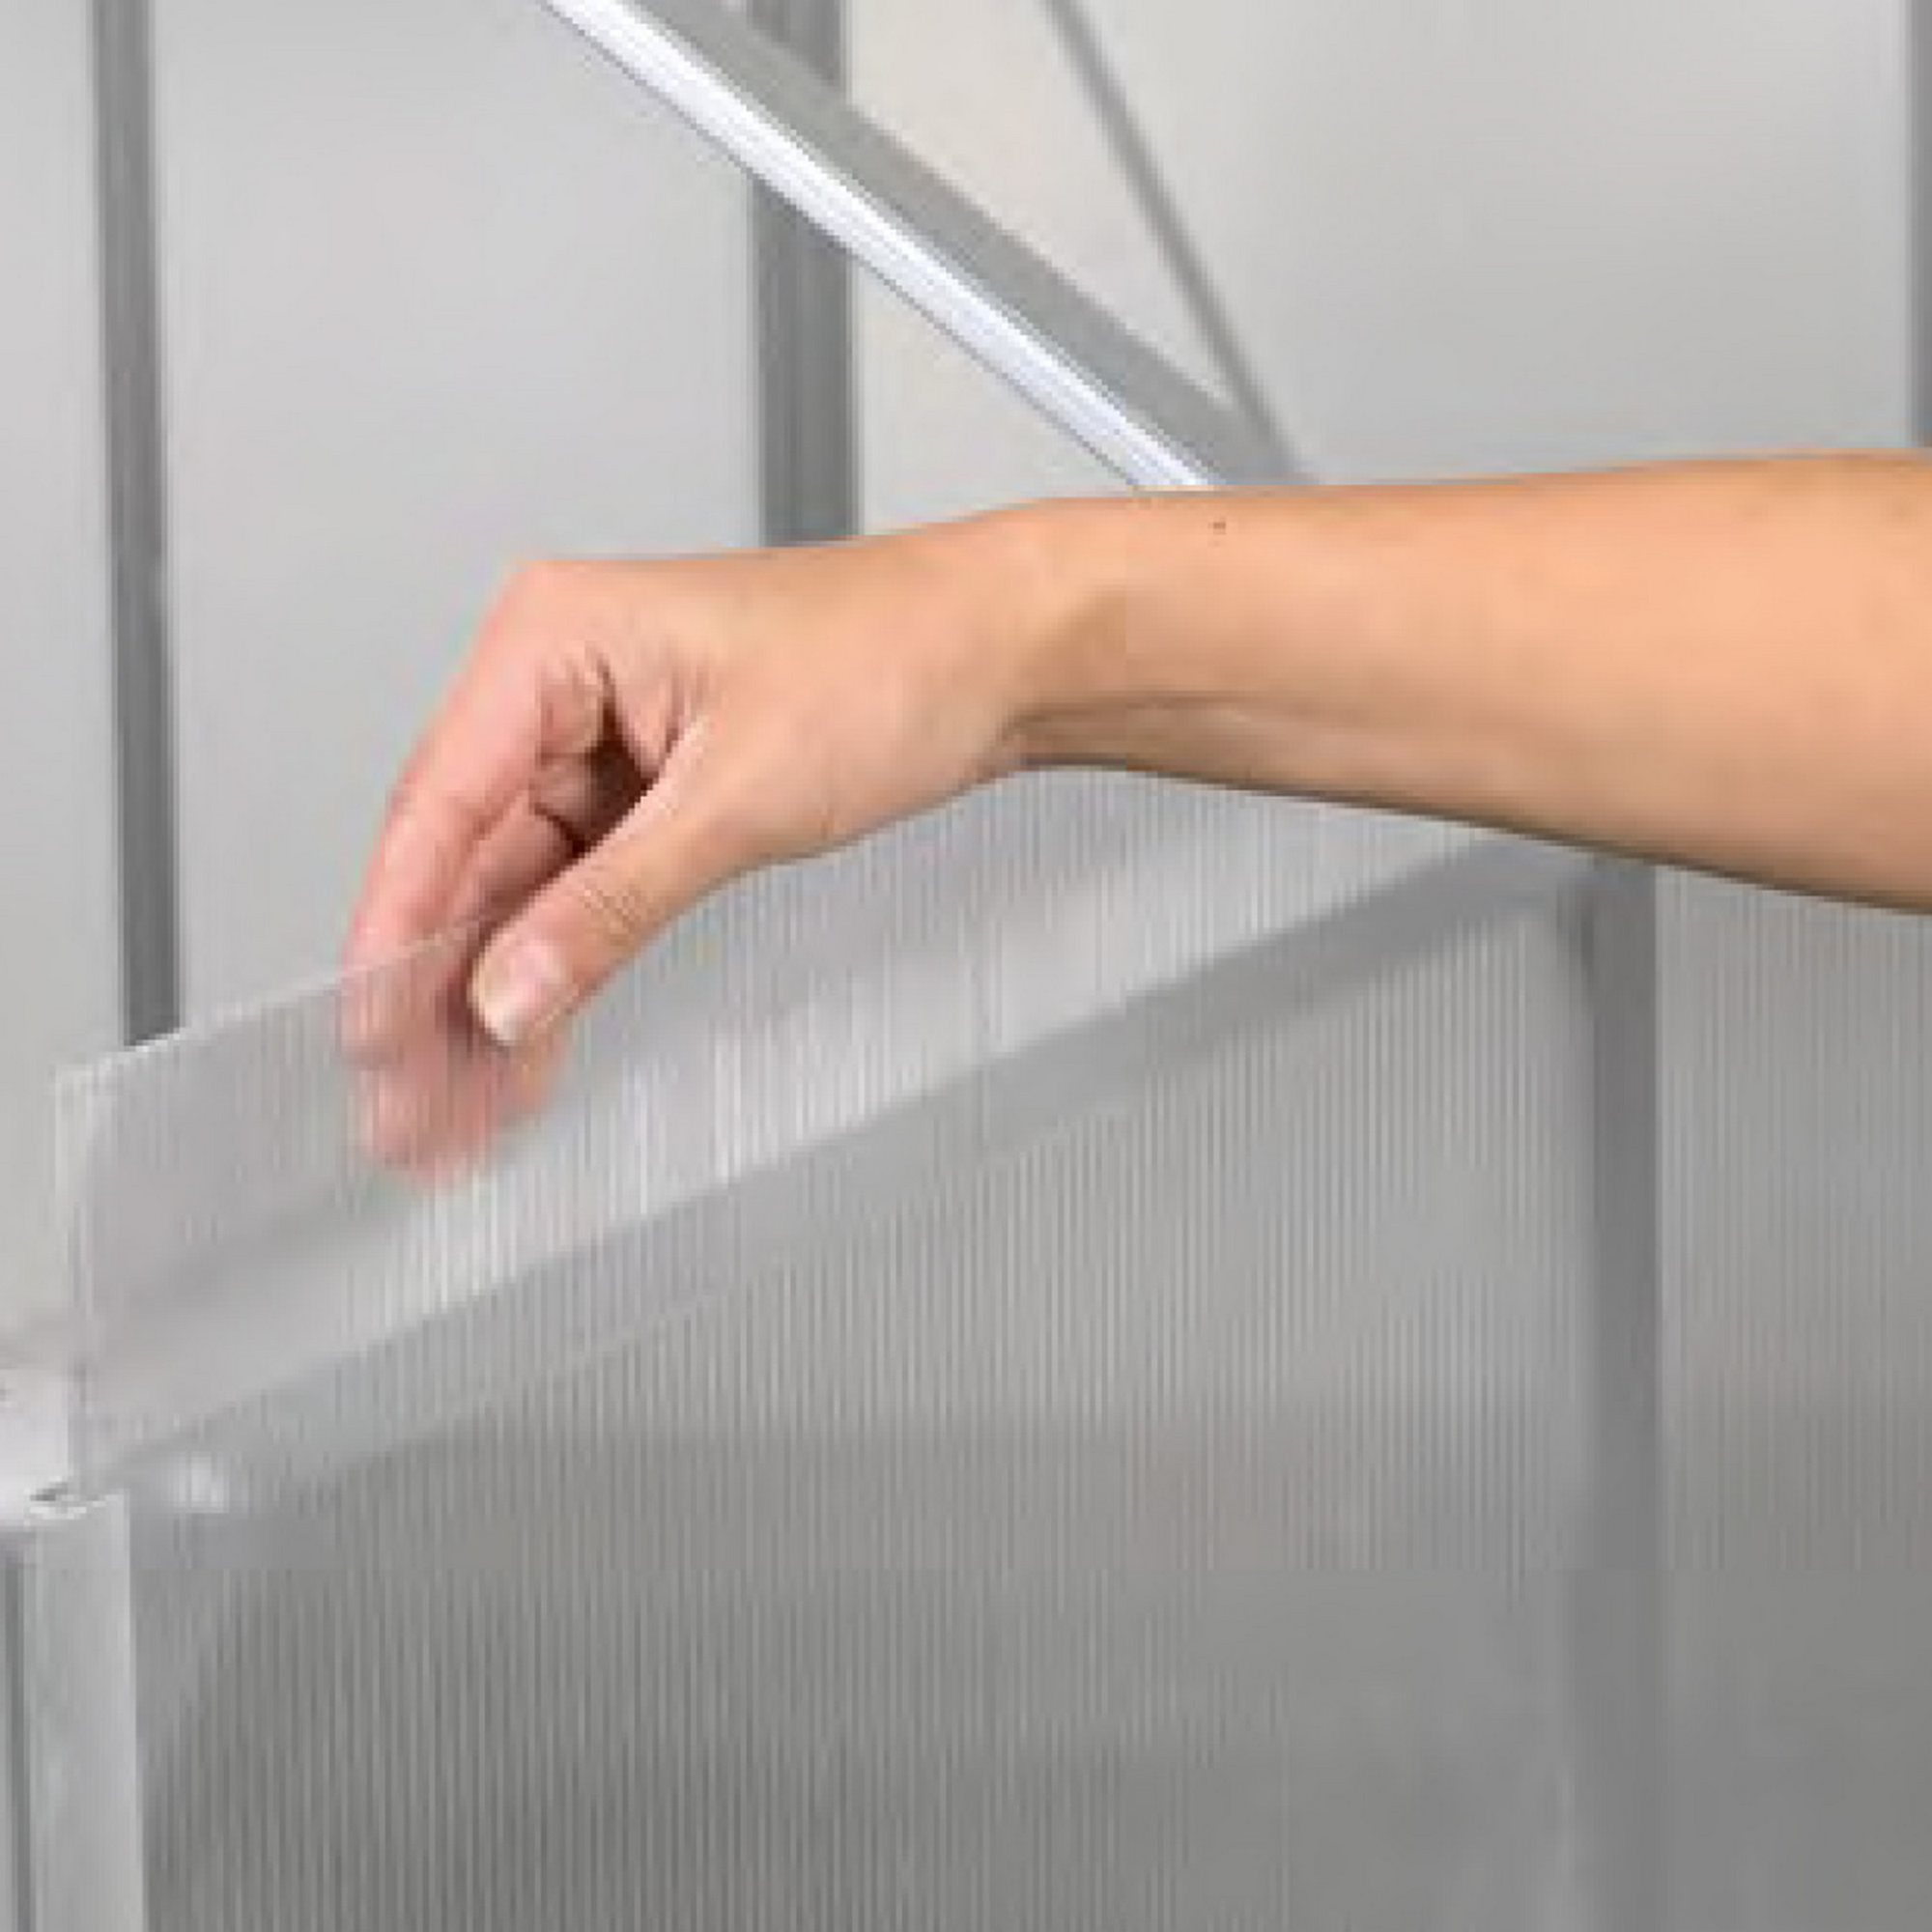 Hohlkammerplatten Gewächshaus 'Ergänzungsset 4' transparent 6 mm, 6-teilig + product picture